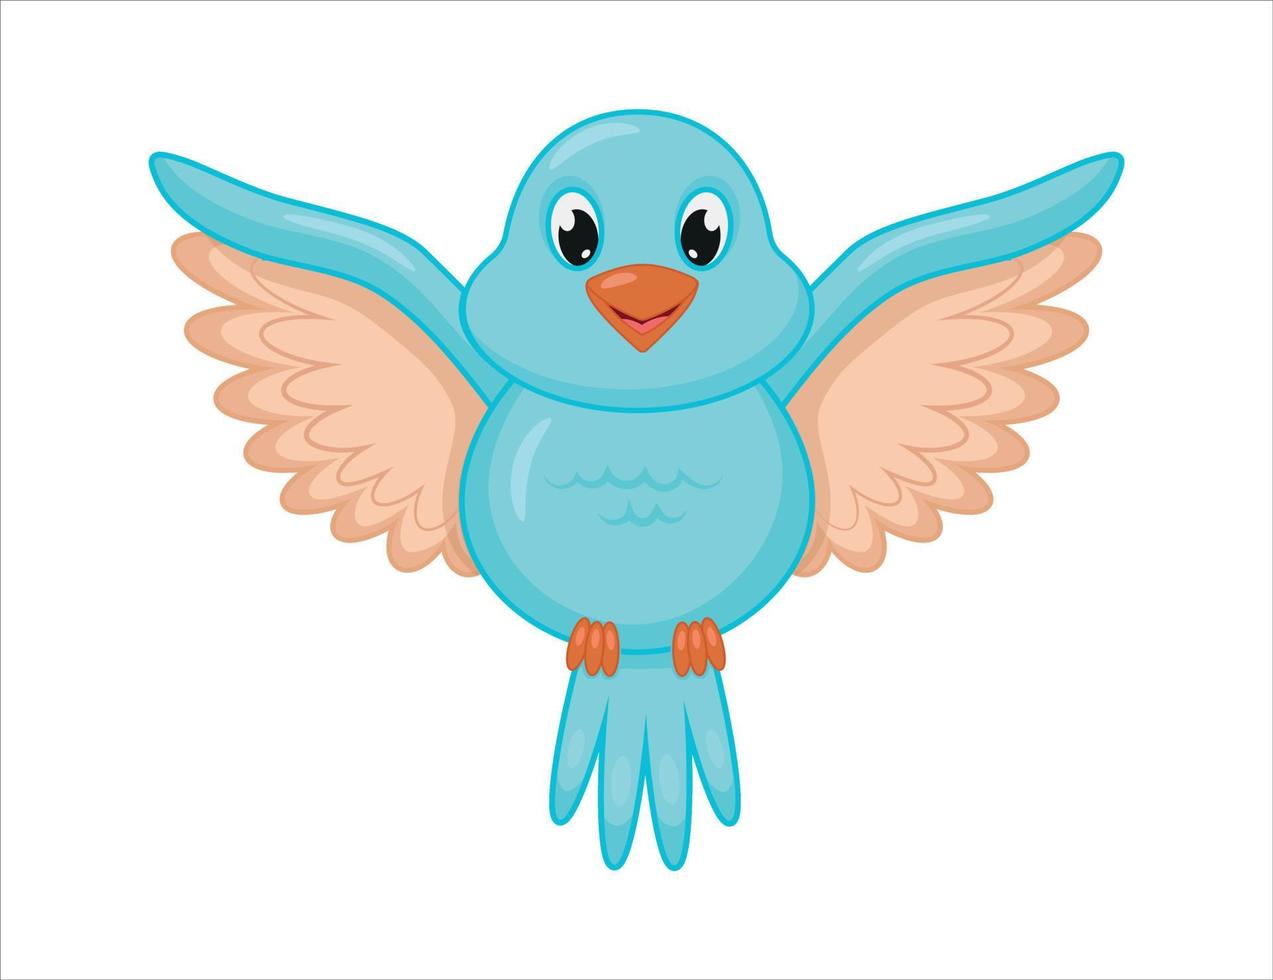 uccello blu in stile cartone animato con le ali spiegate. un simpatico uccello blu sta volando. illustrazione vettoriale in stile cartone animato.